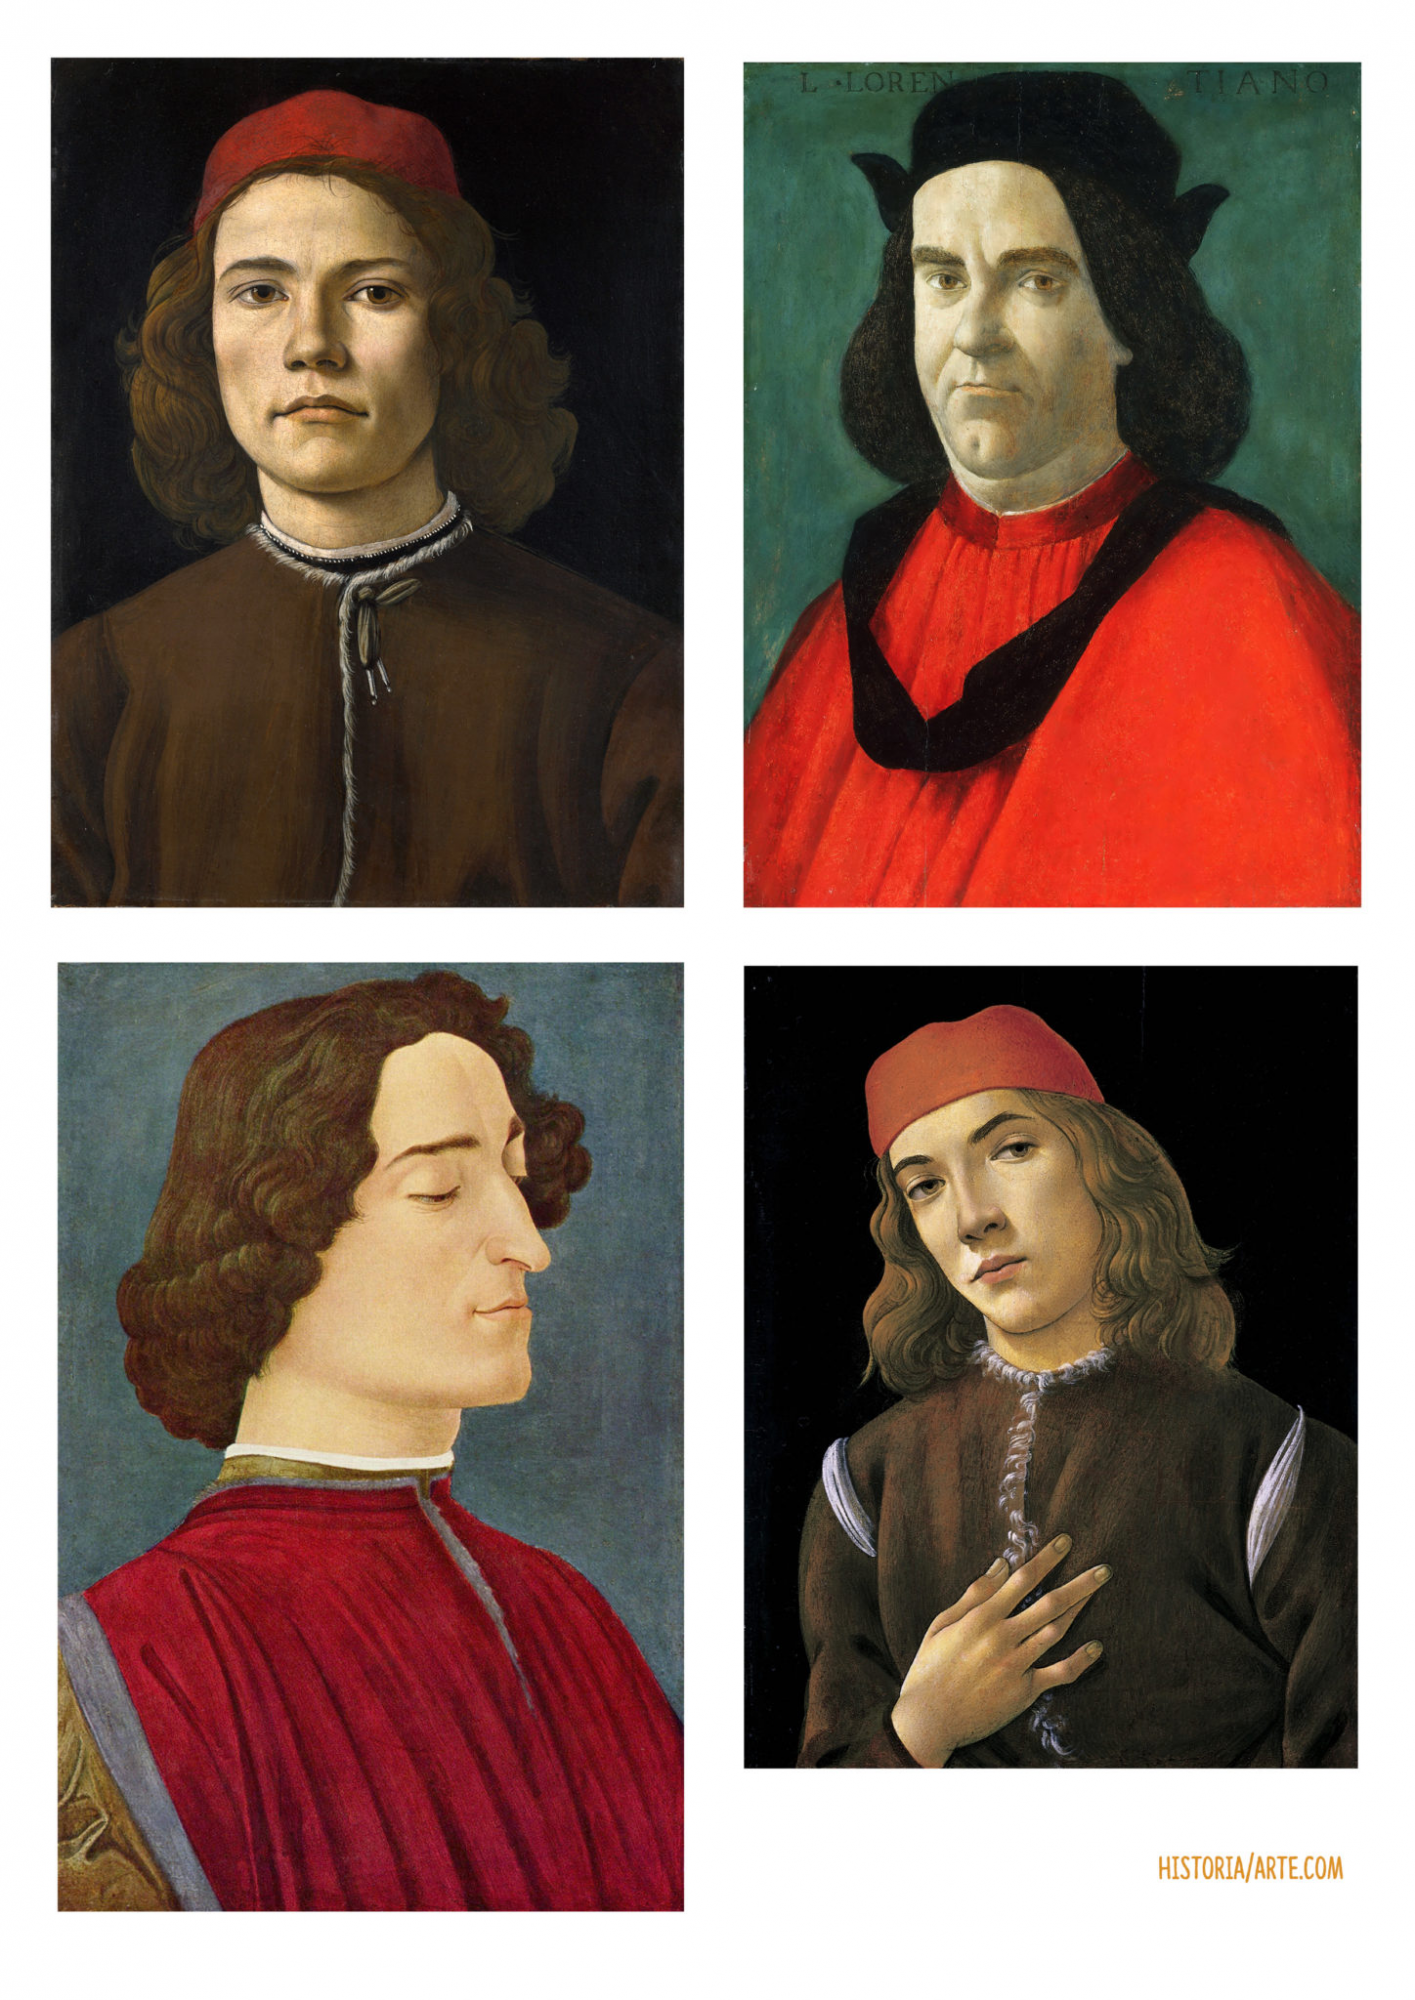 4 retratos de Botticelli - Sandro Botticelli - Historia Arte (HA!)